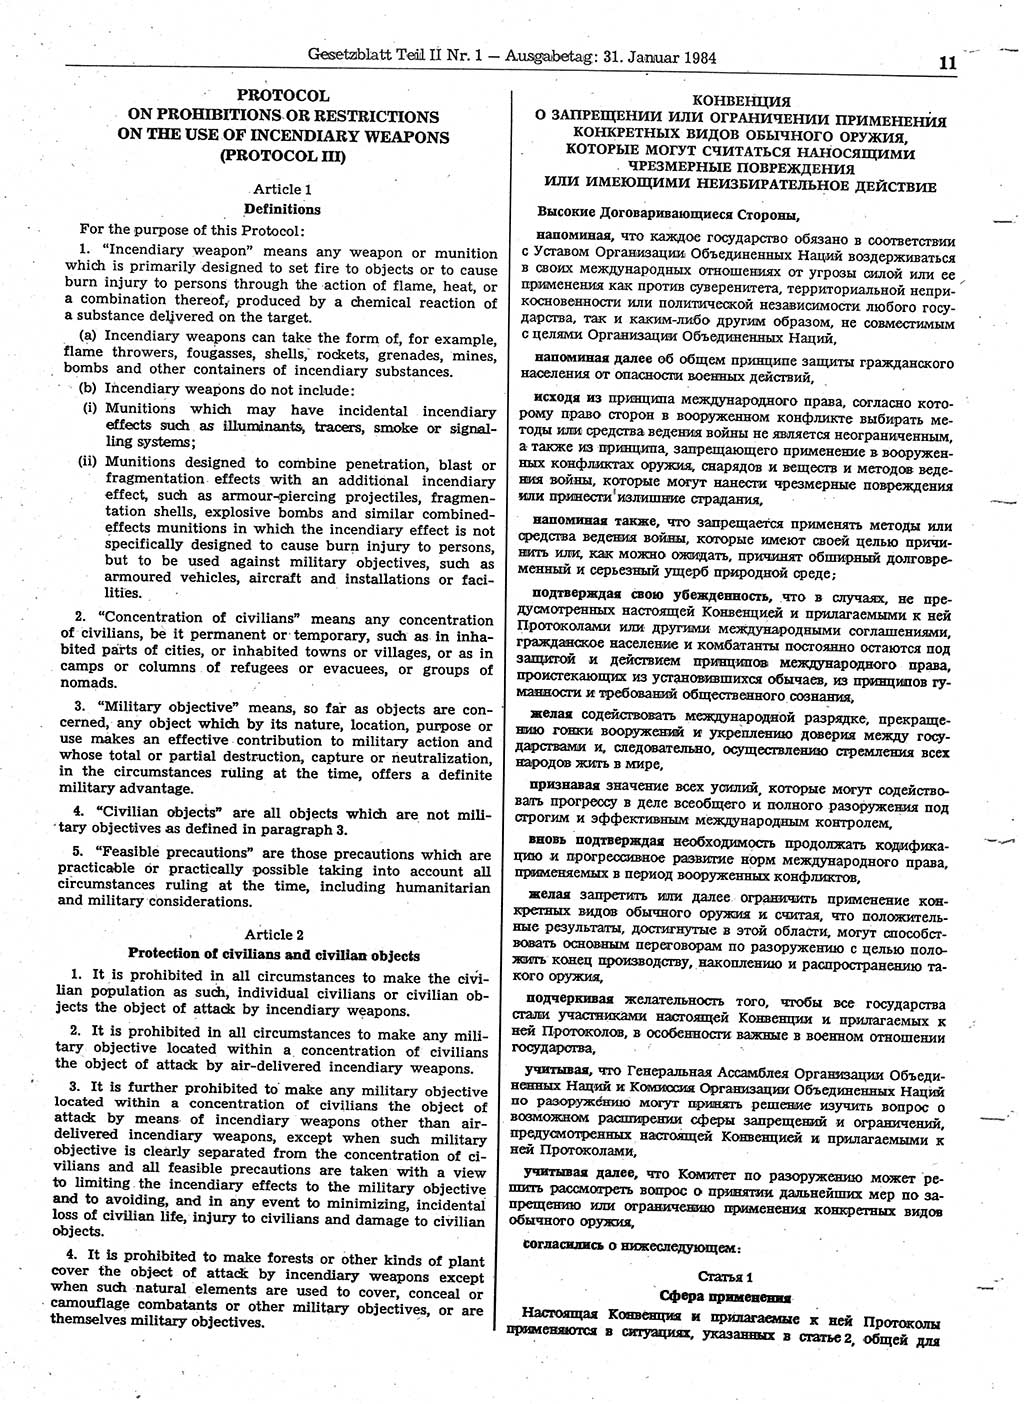 Gesetzblatt (GBl.) der Deutschen Demokratischen Republik (DDR) Teil ⅠⅠ 1984, Seite 11 (GBl. DDR ⅠⅠ 1984, S. 11)